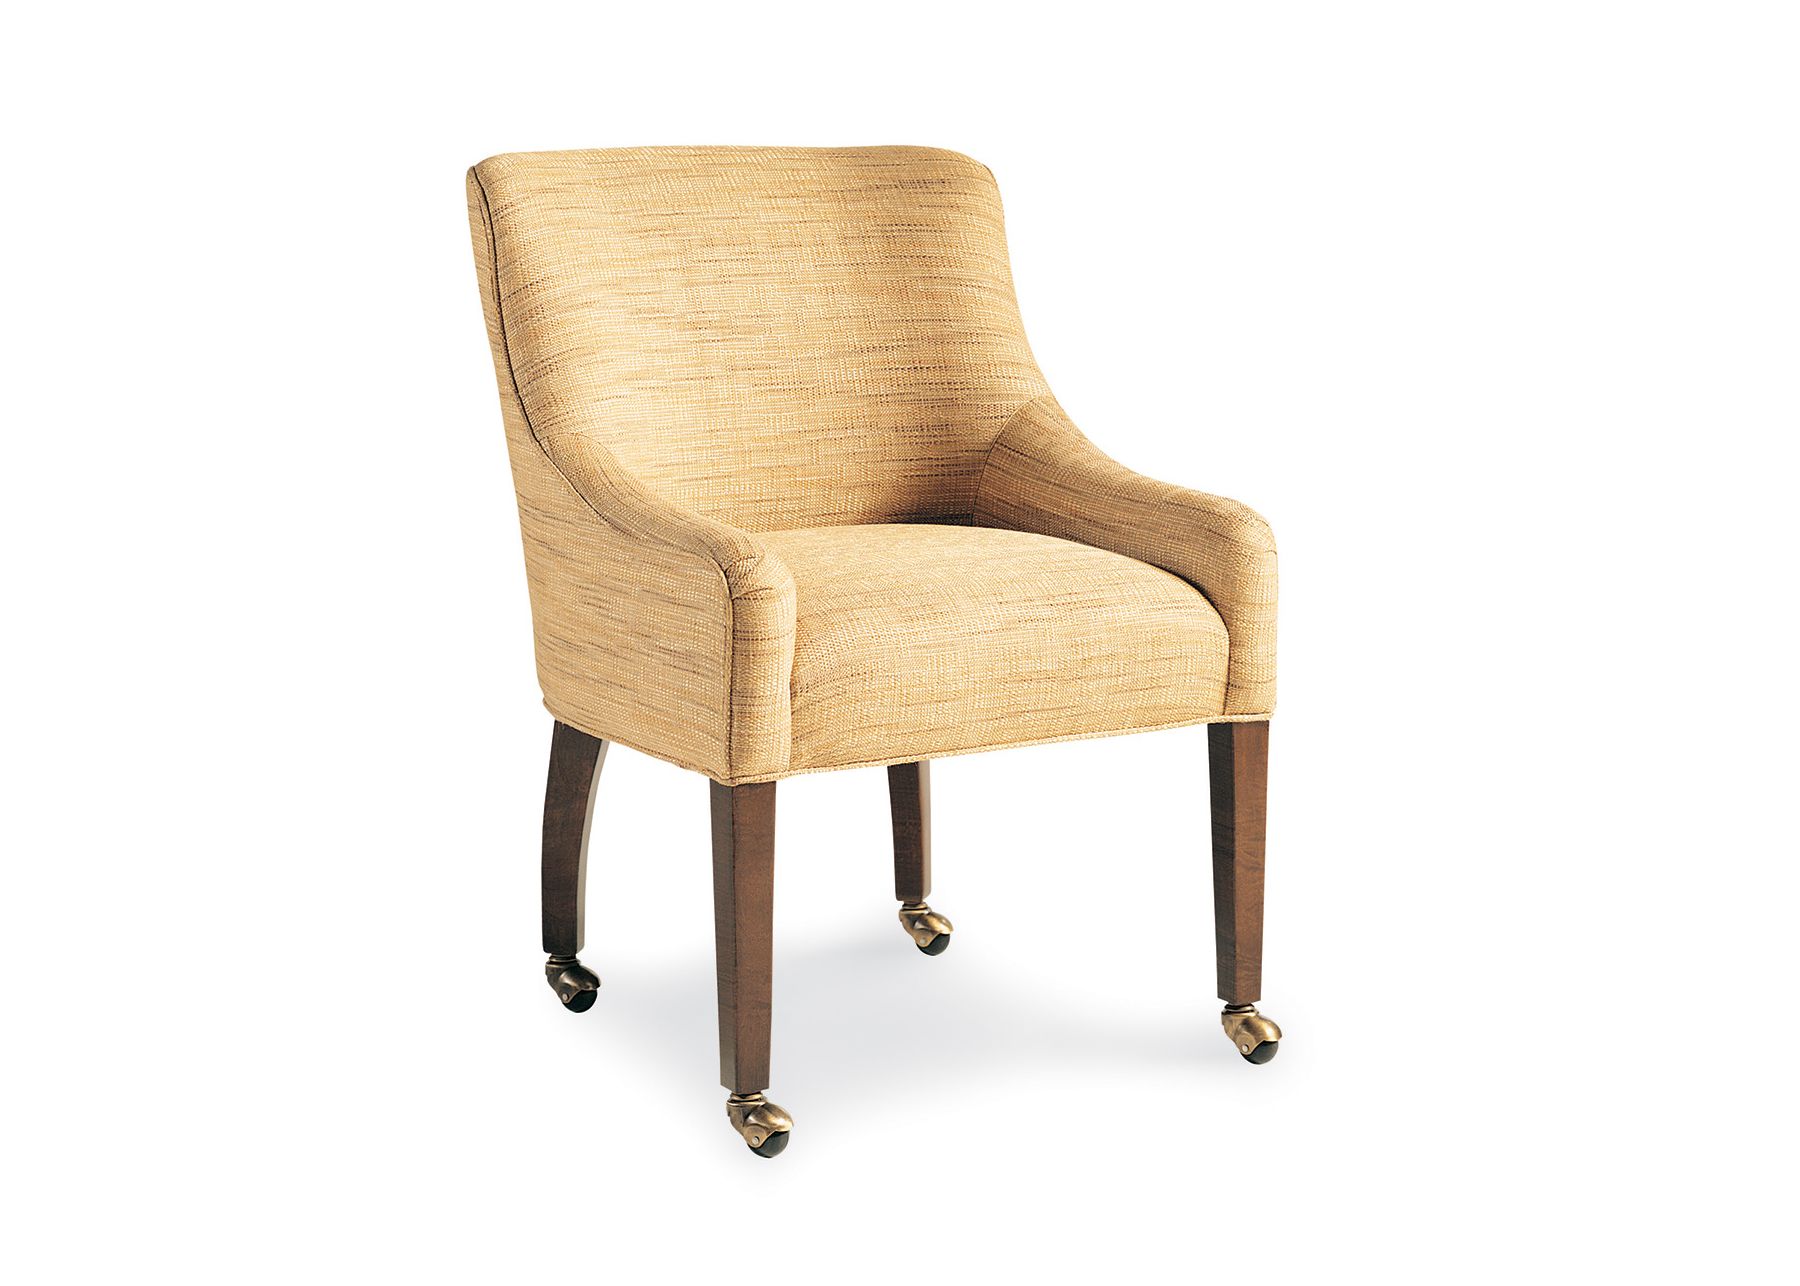 Cabot Wren Ritz Chair